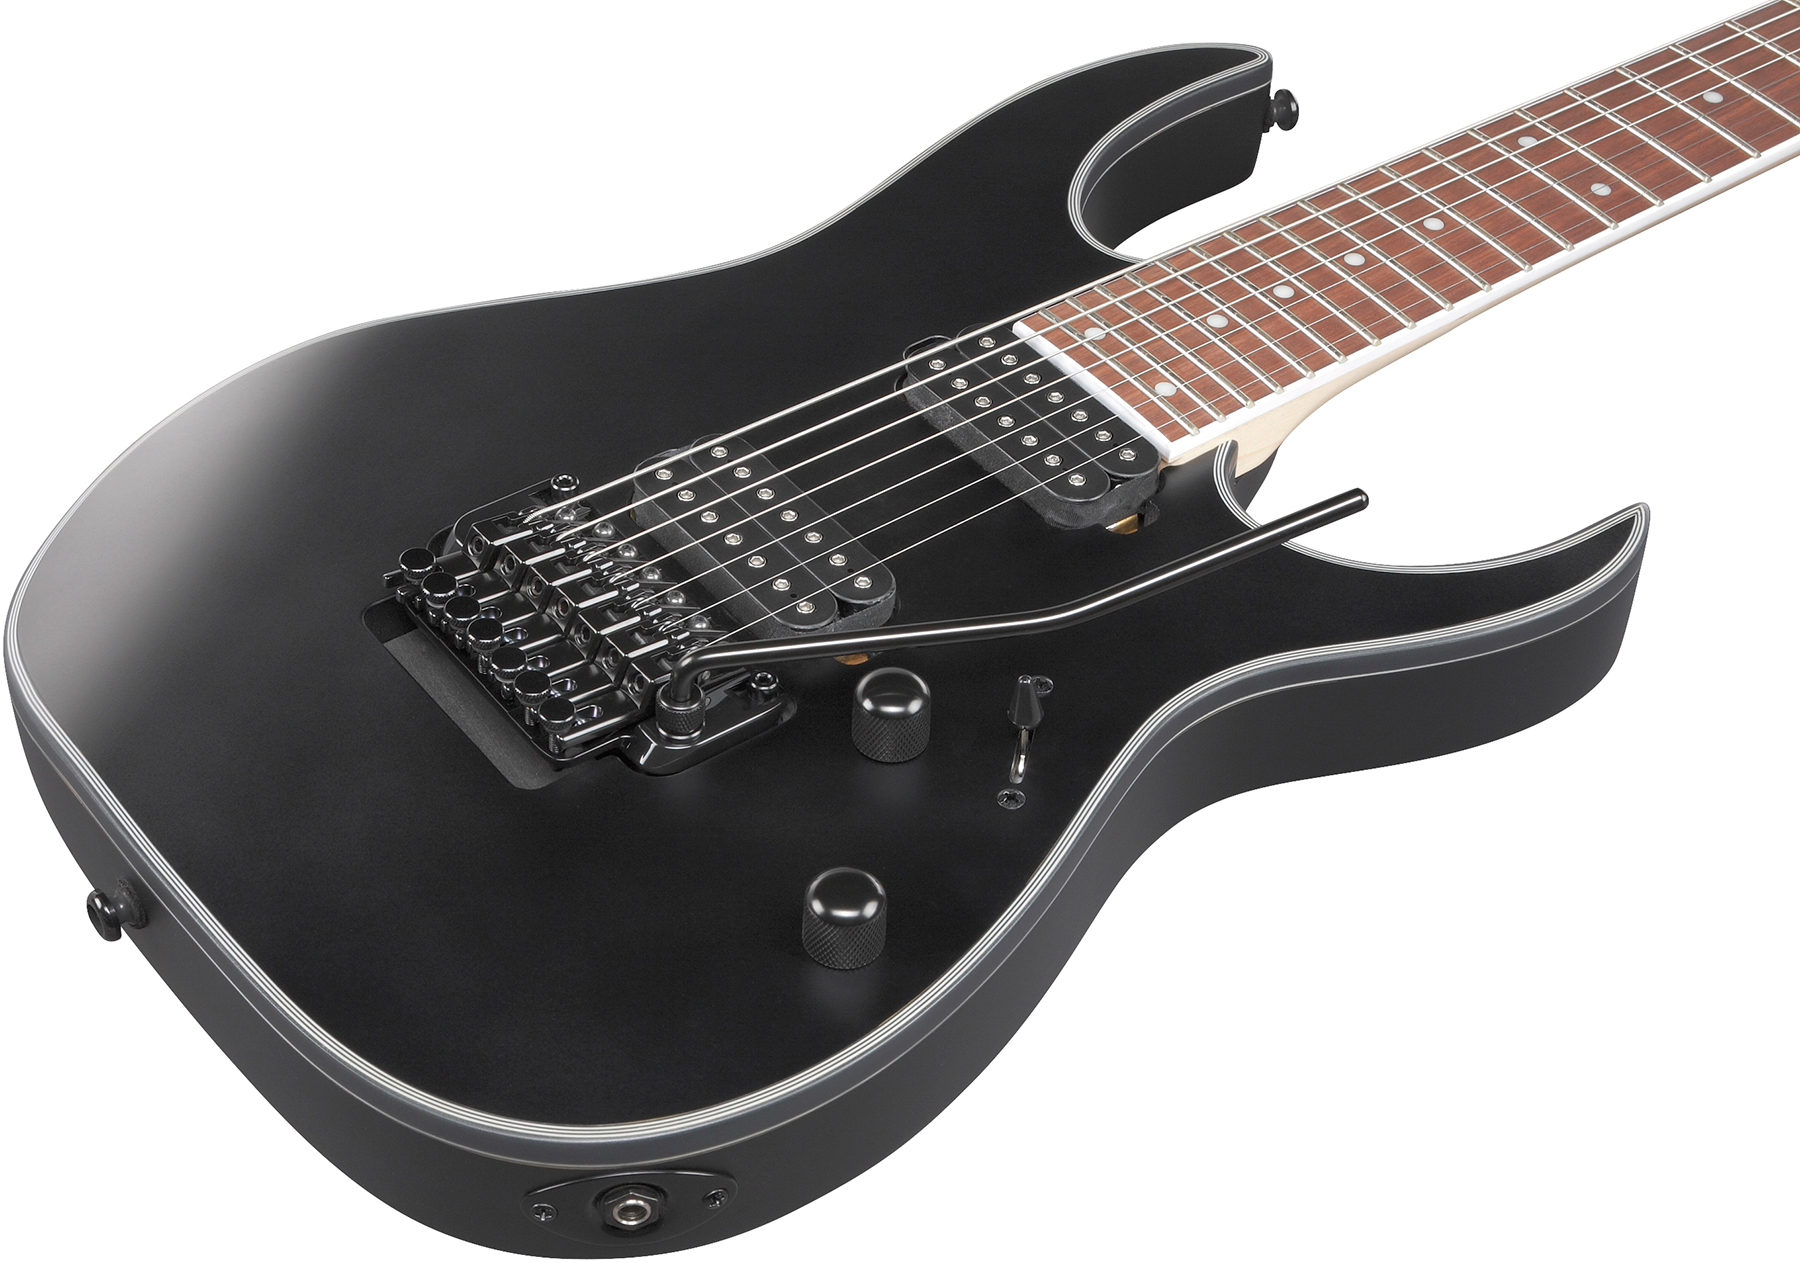 Ibanez Rg7320ex Bkf 7c 2h Fr Jat - Black Flat - 7-saitige E-Gitarre - Variation 2